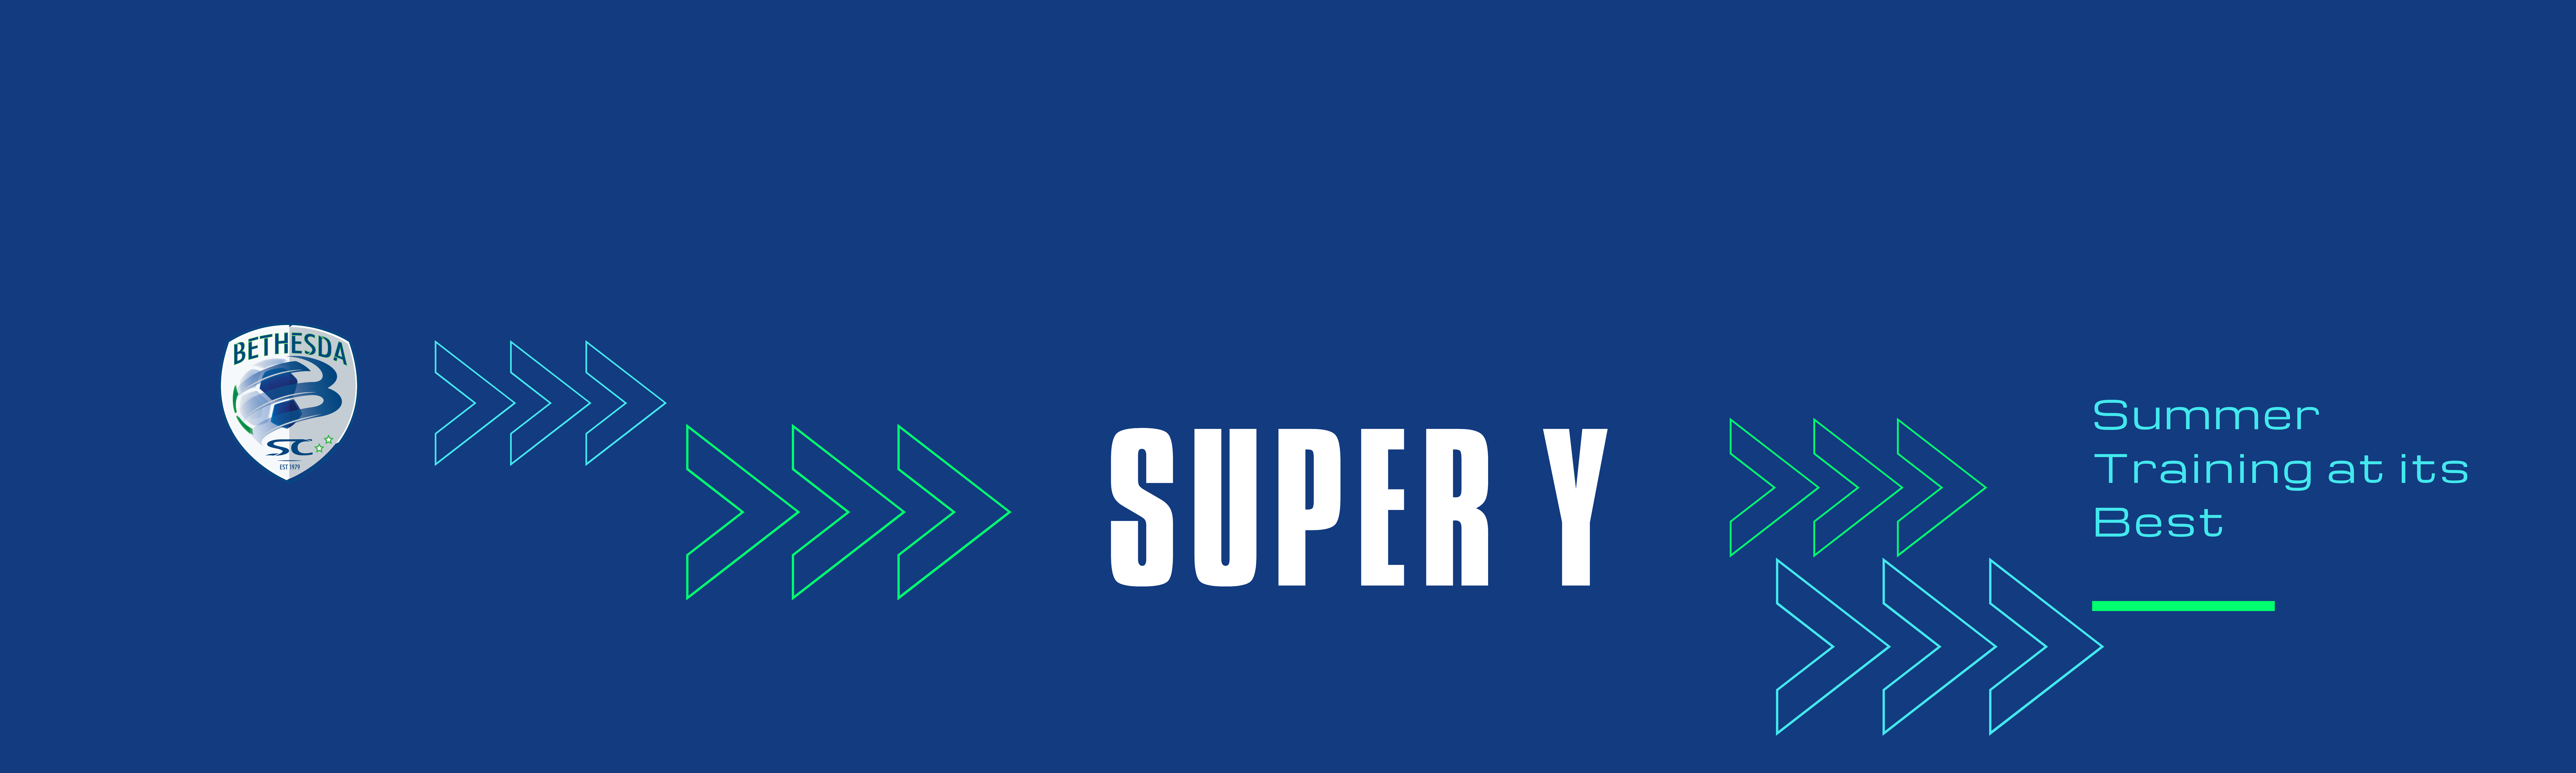 Super Y_Season_website